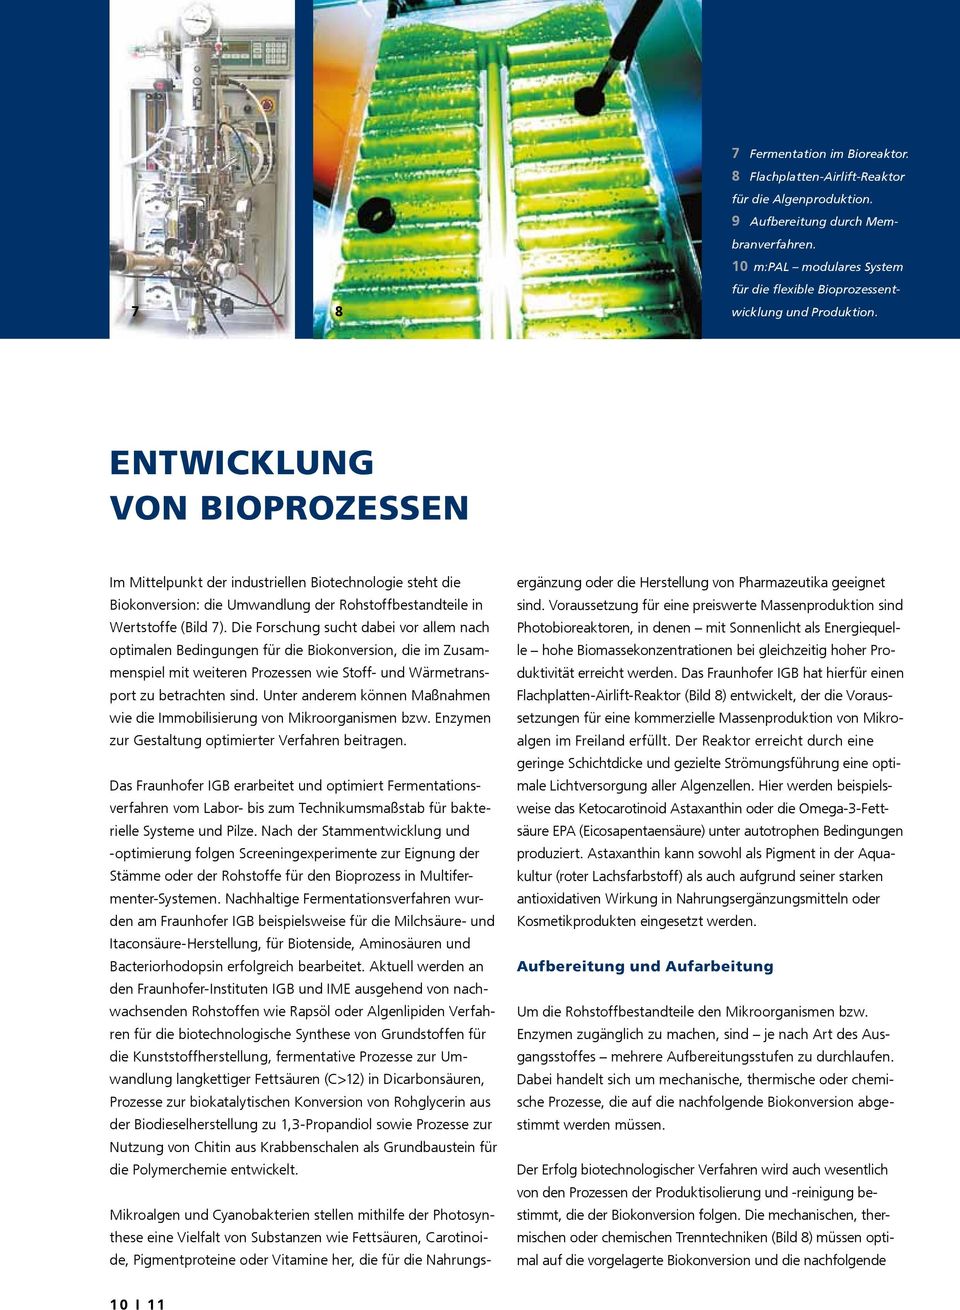 Entwicklung von Bioprozessen Im Mittelpunkt der industriellen Biotechnologie steht die Biokonversion: die Umwandlung der Rohstoffbestandteile in Wertstoffe (Bild 7).